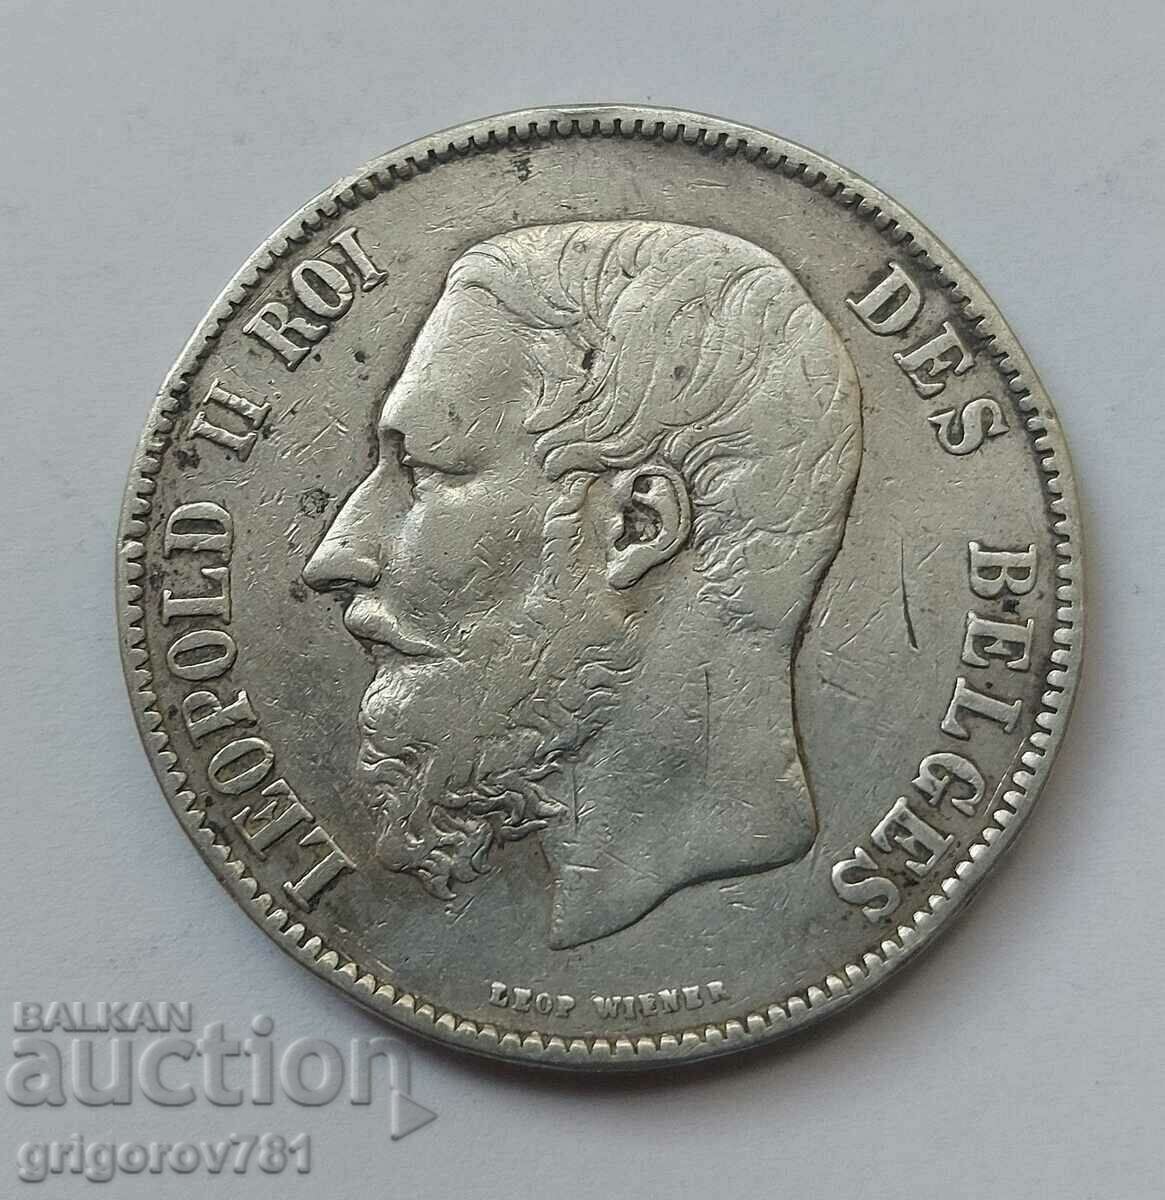 5 Francs Silver Belgium 1873 Silver Coin #174